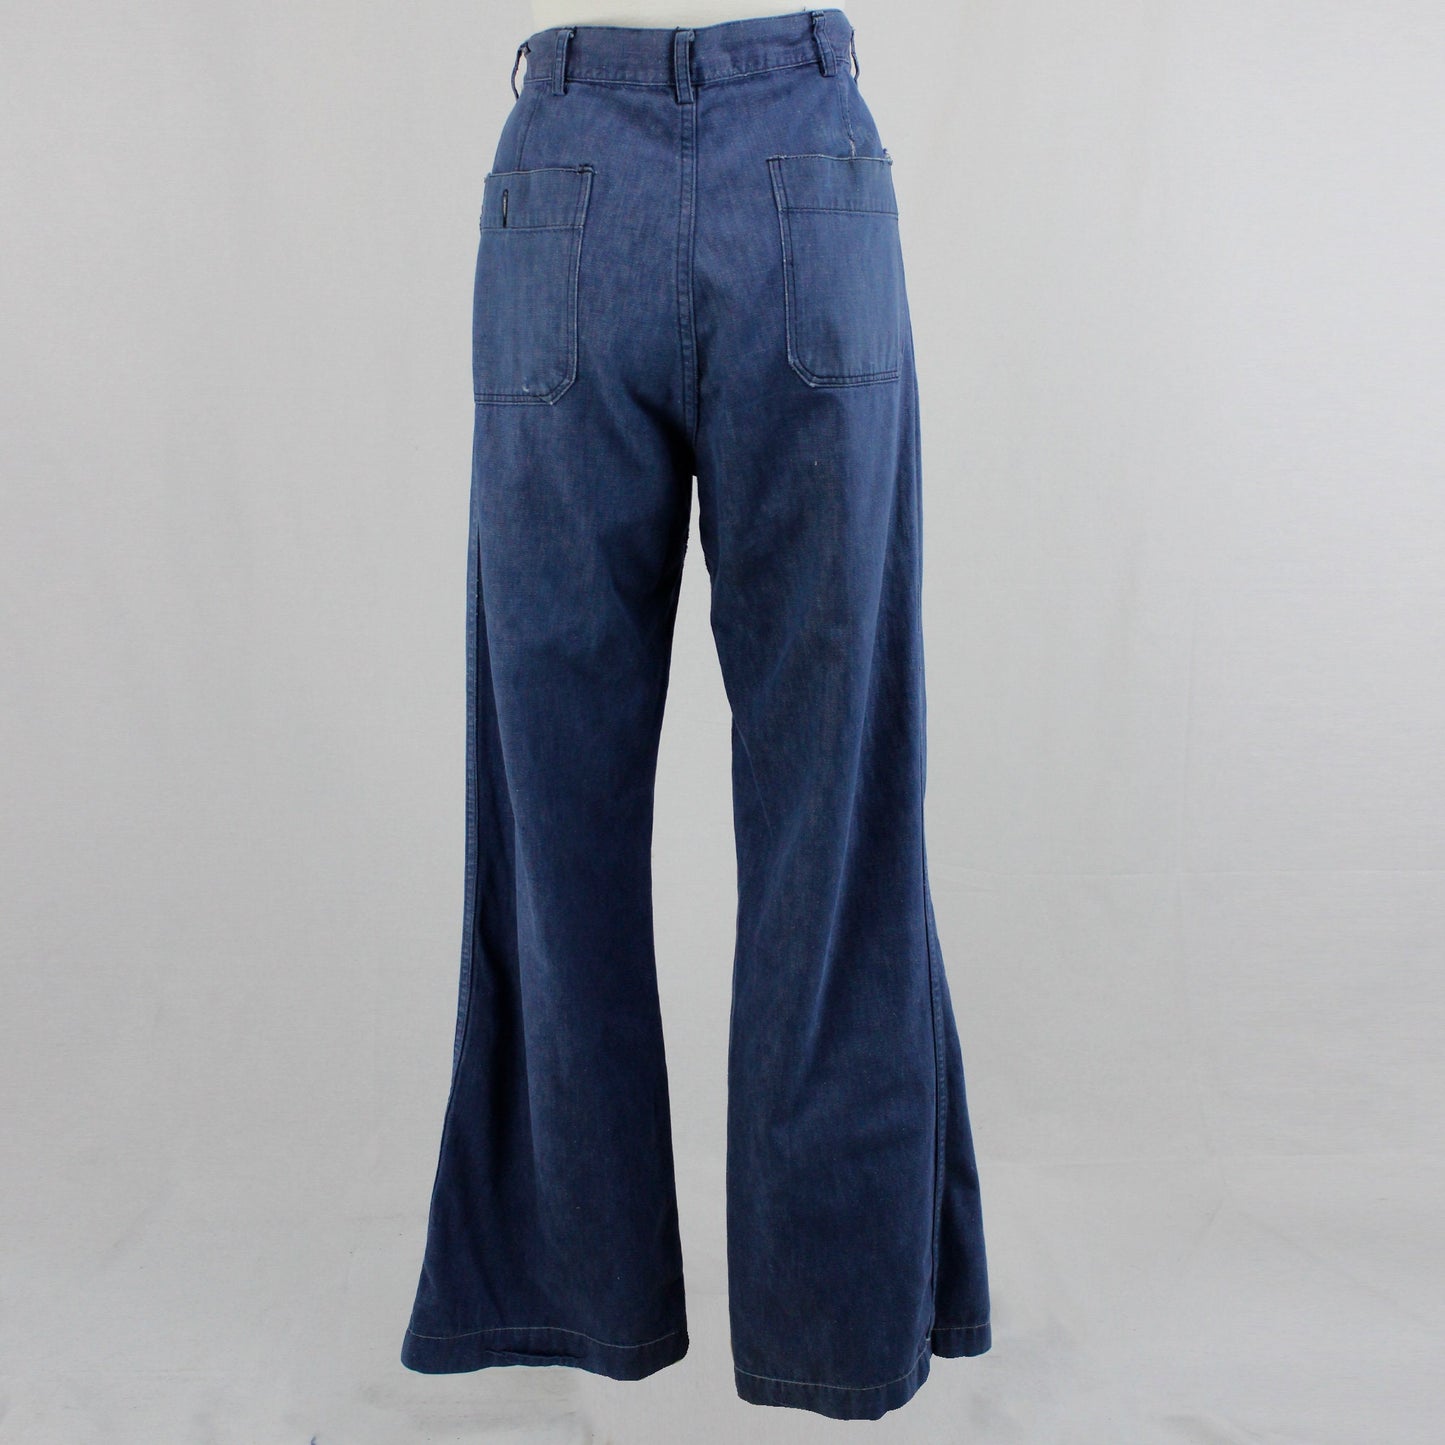 Vintage 1940's USN Denim Button Fly Jeans